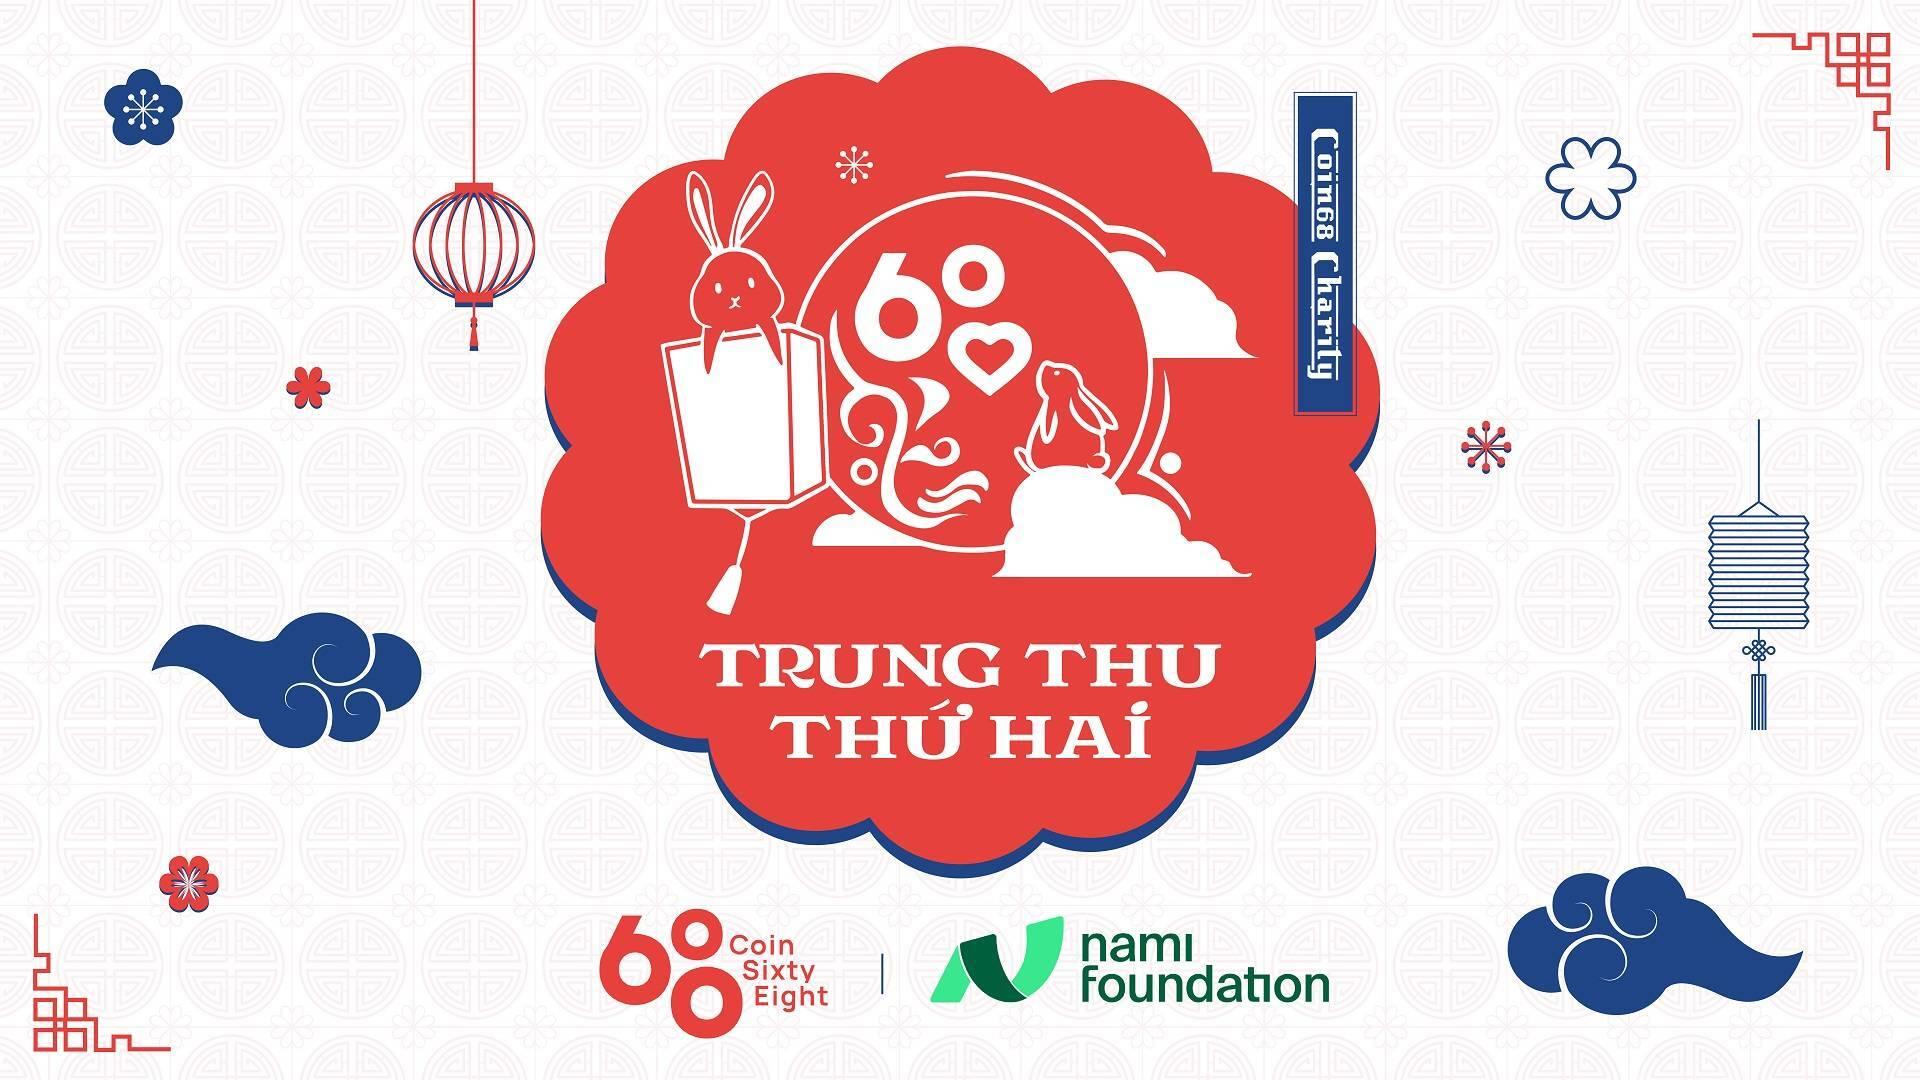 coin68-charity-project-pha-co-trung-thu-thu-hai-cung-70-em-nho-tai-mai-am-thien-phuoc-nhan-ai